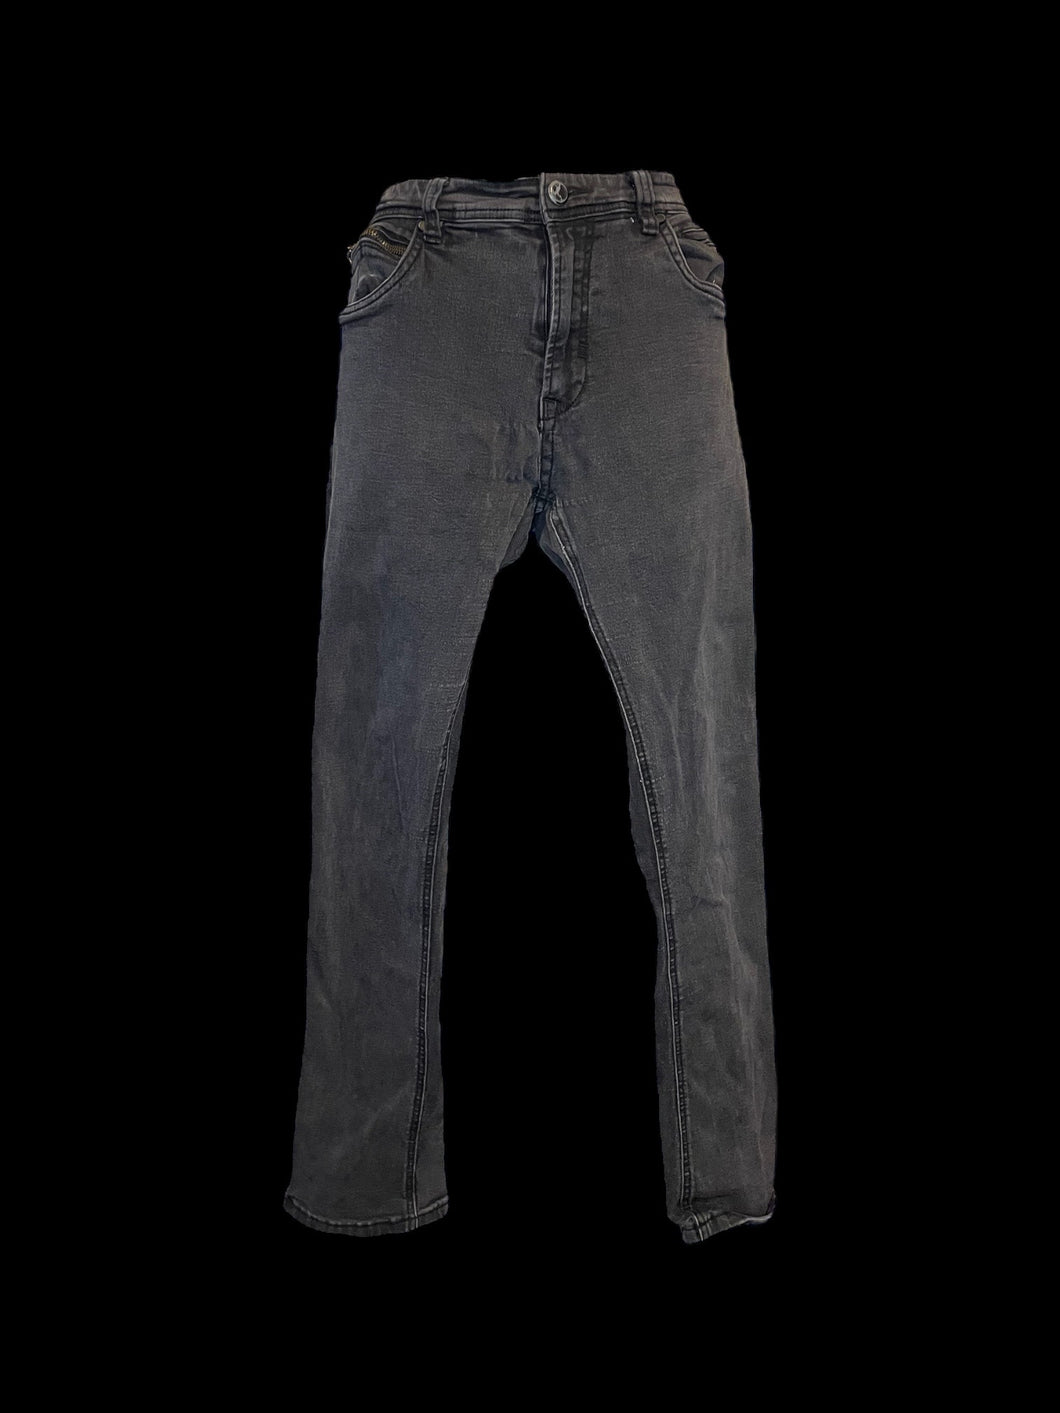 L Black denim mid rise taper leg pants w/ pockets, belt loops, & button/zipper closure